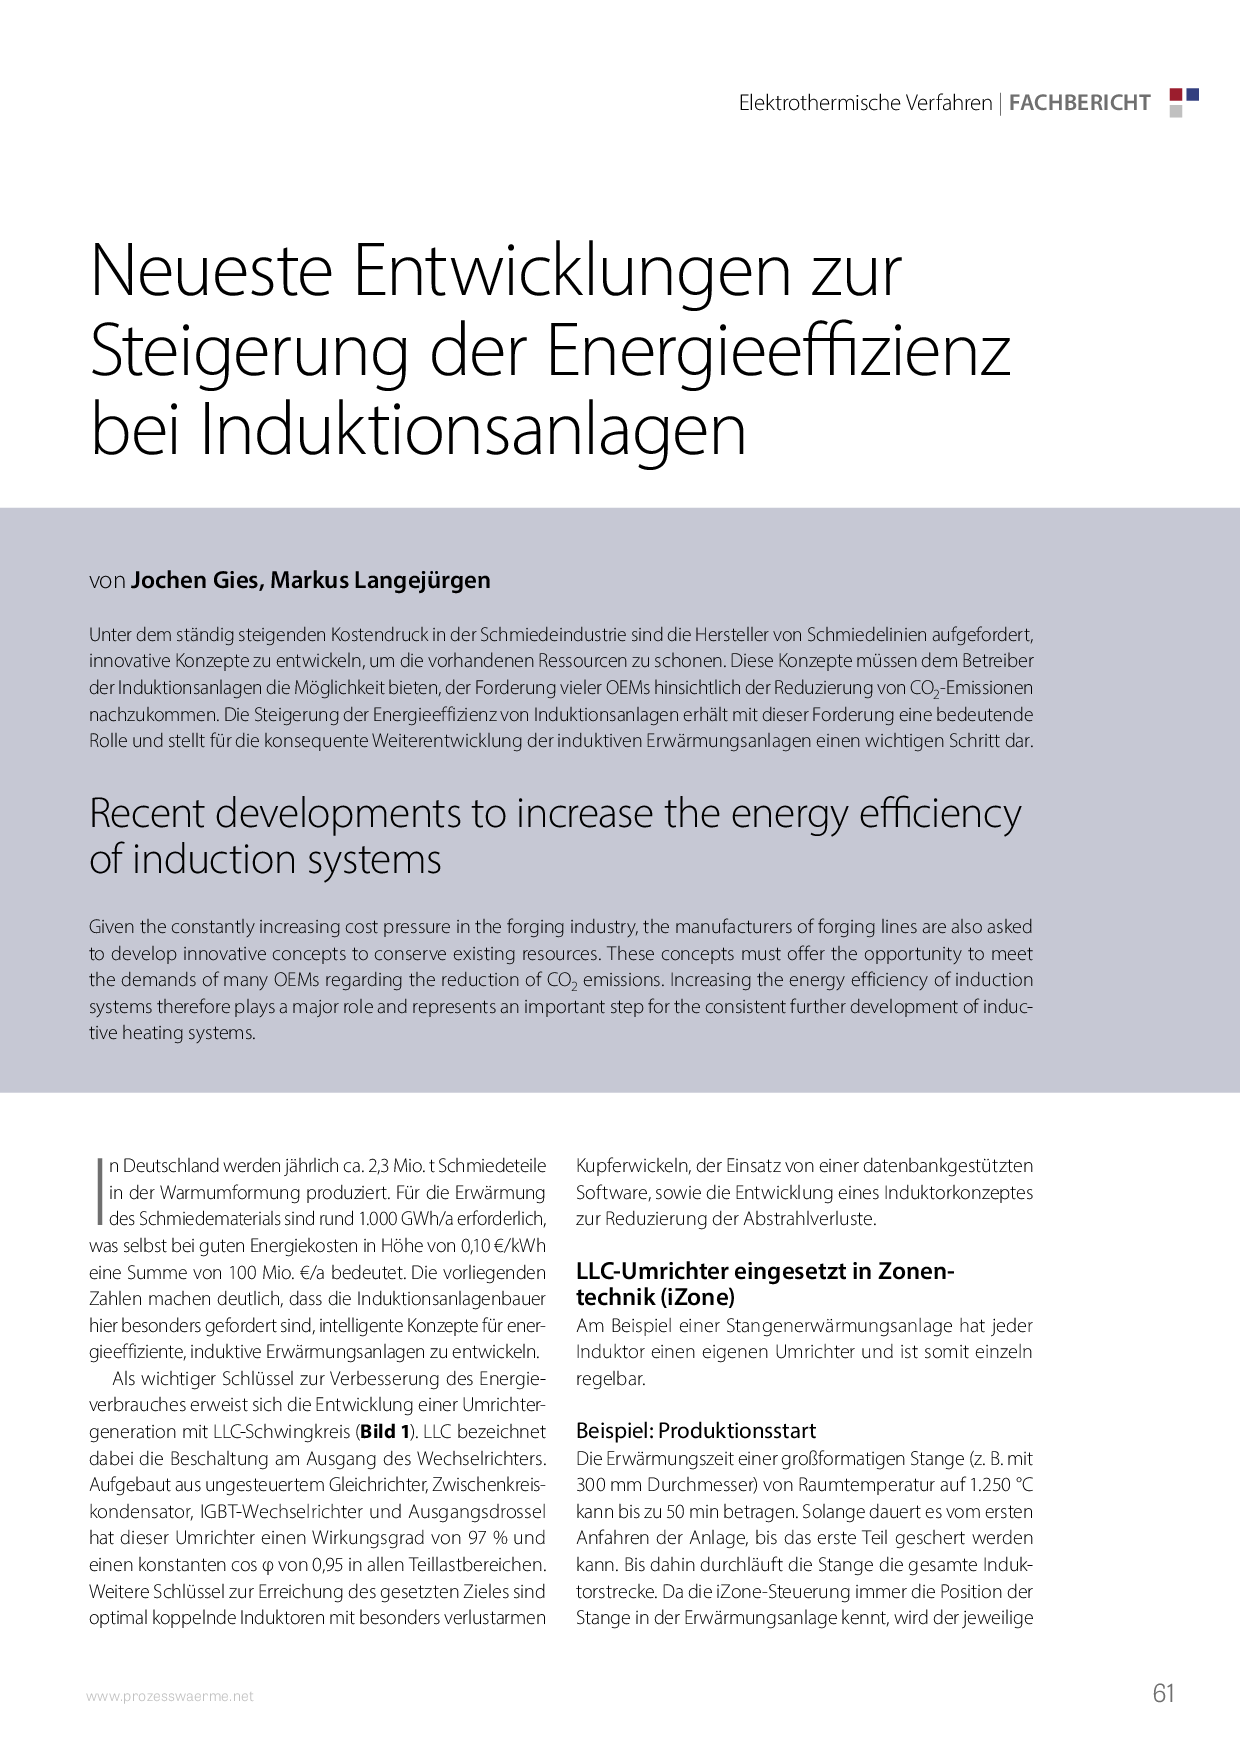 Neueste Entwicklungen zur Steigerung der Energieeffizienz bei Induktionsanlagen